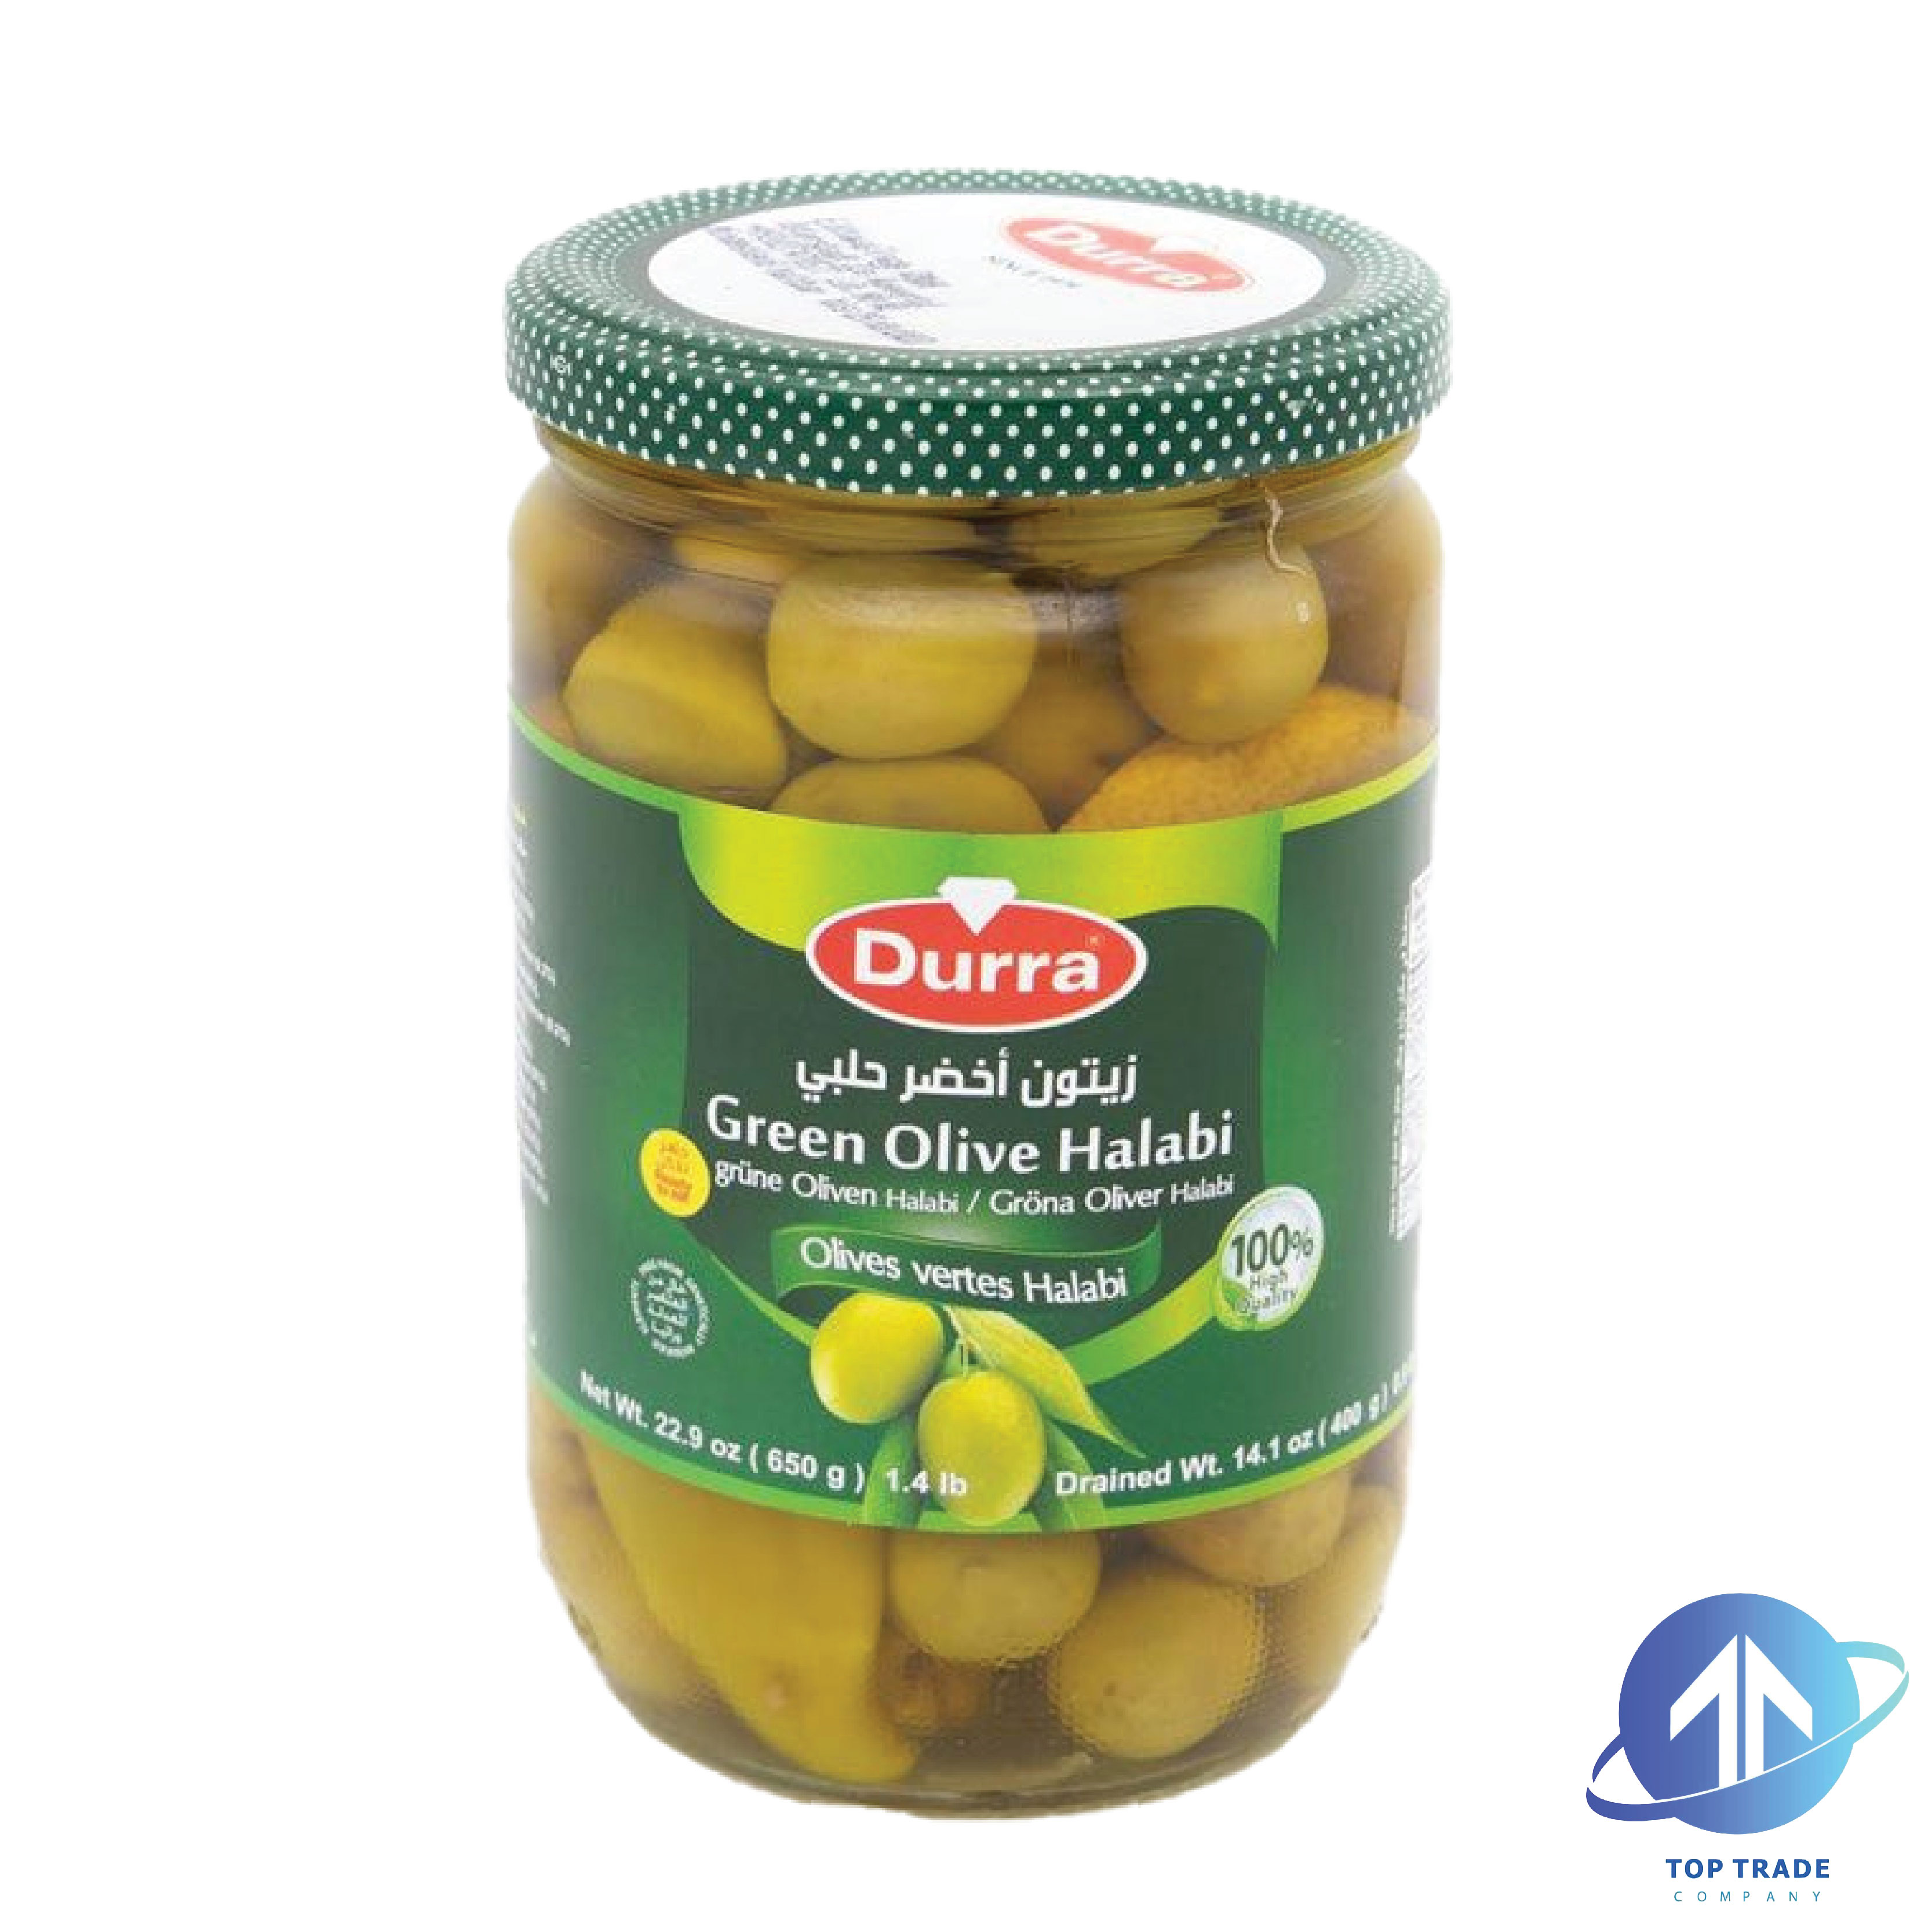 Durra Green Olives Halabi 650gr 